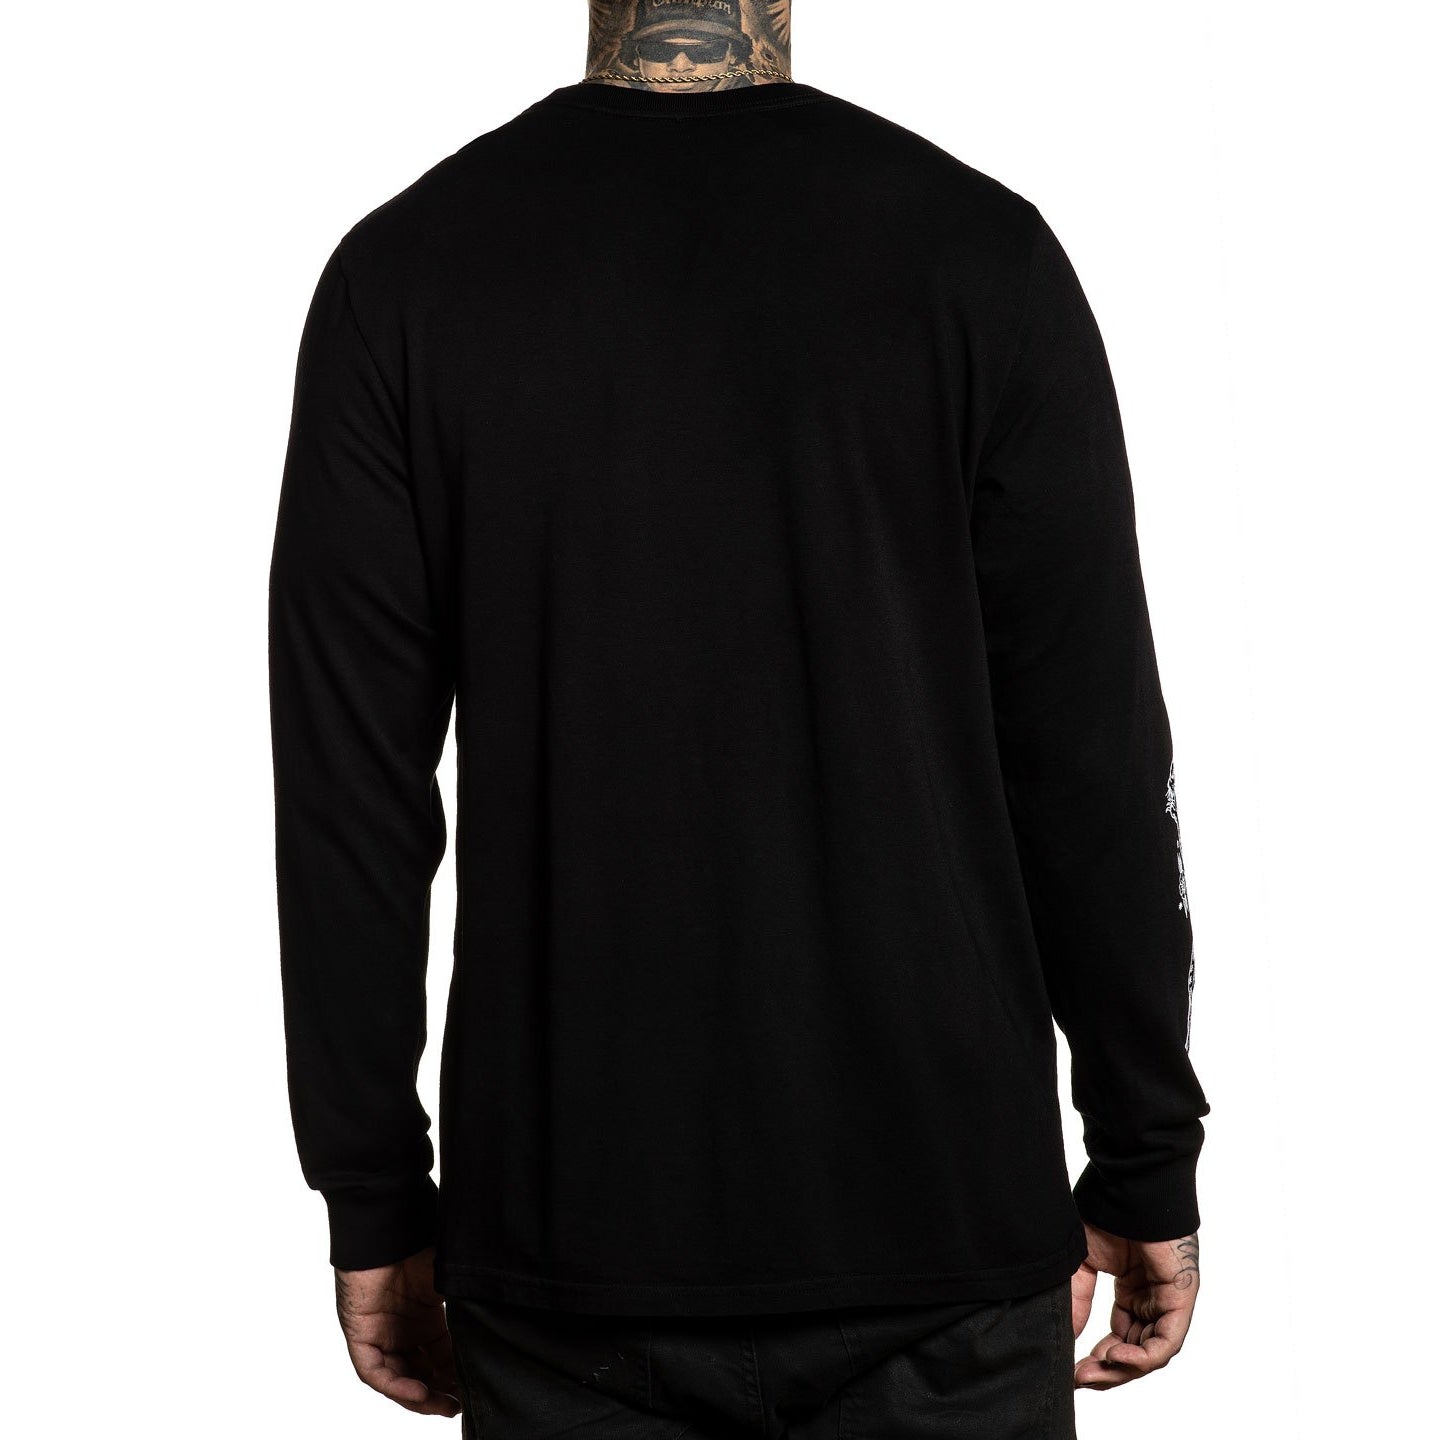 Prowler Premium Long Sleeve Shirt-Mens Jumpers, Hoodies & Long Sleeves-Scarlett Dawn